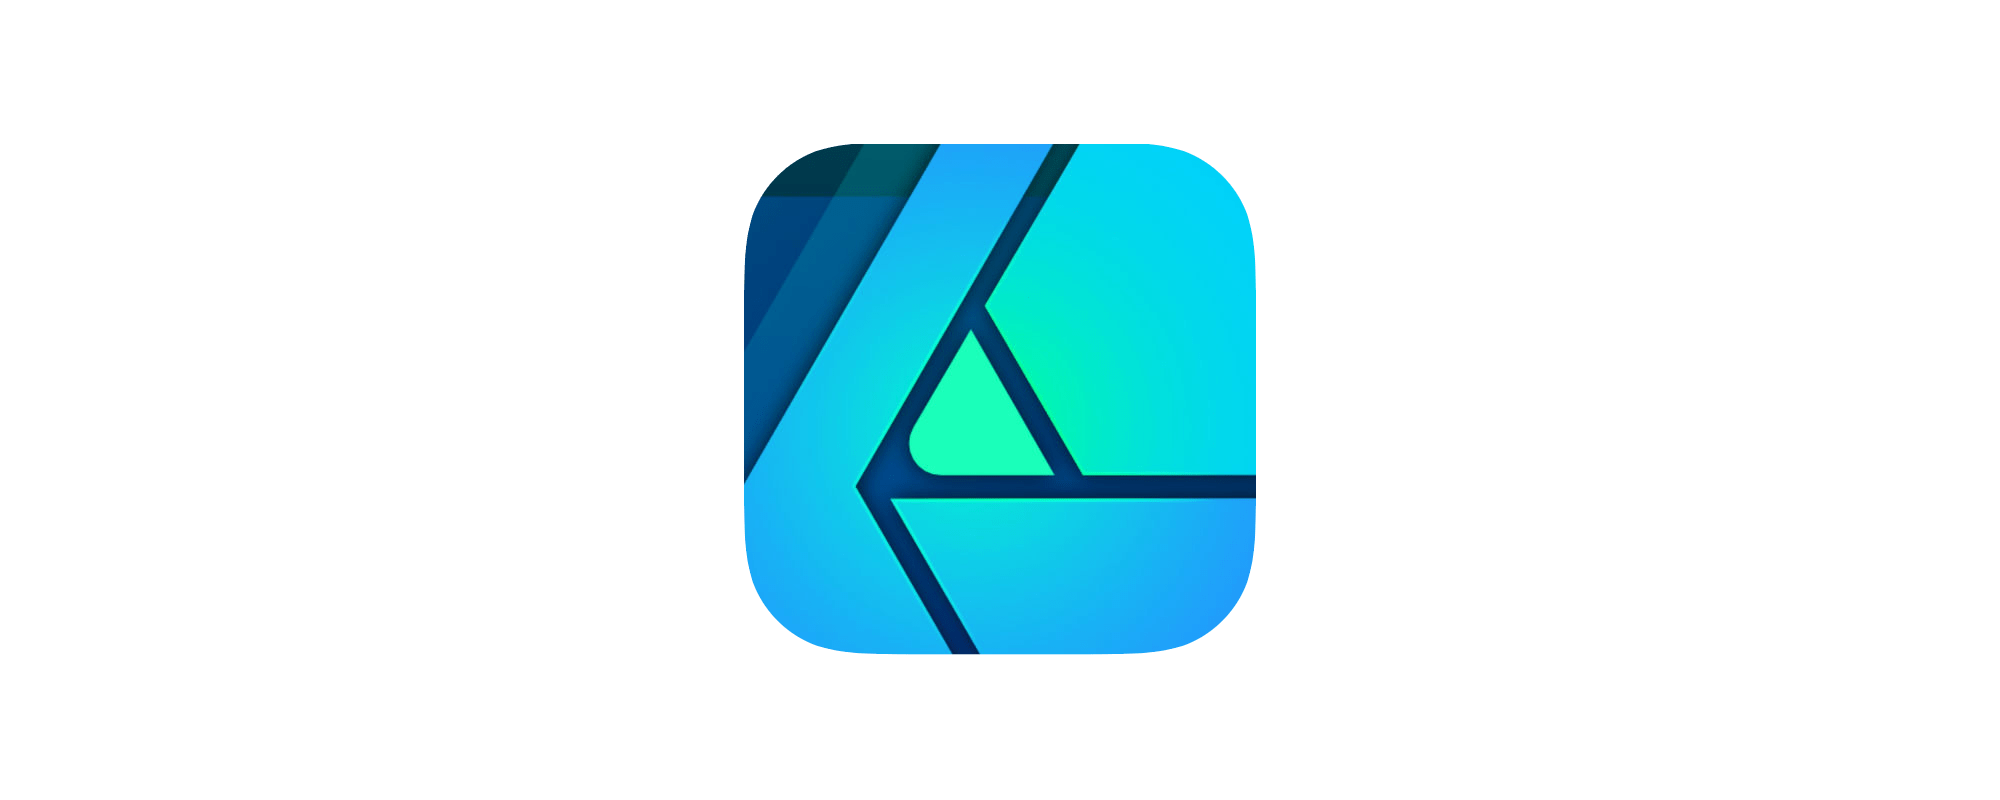 affinity designer ipad mac